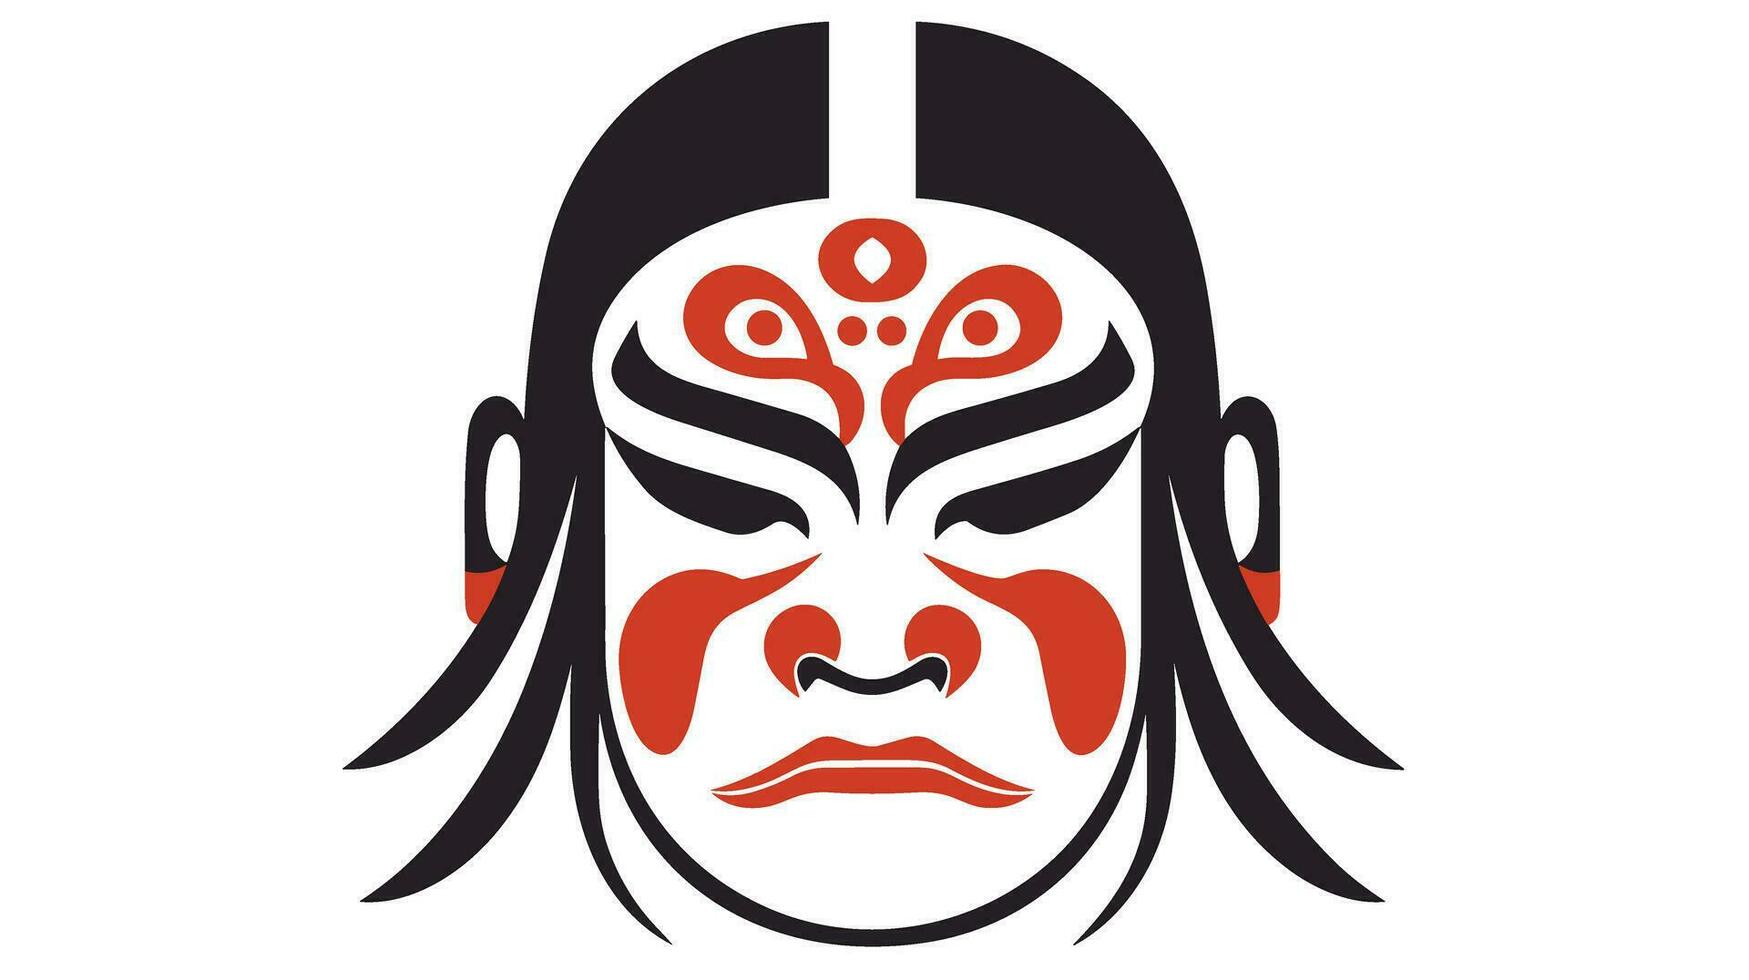 geest van de krijger onderzoeken de raadselachtig samurai masker voor iconisch symboliek vector